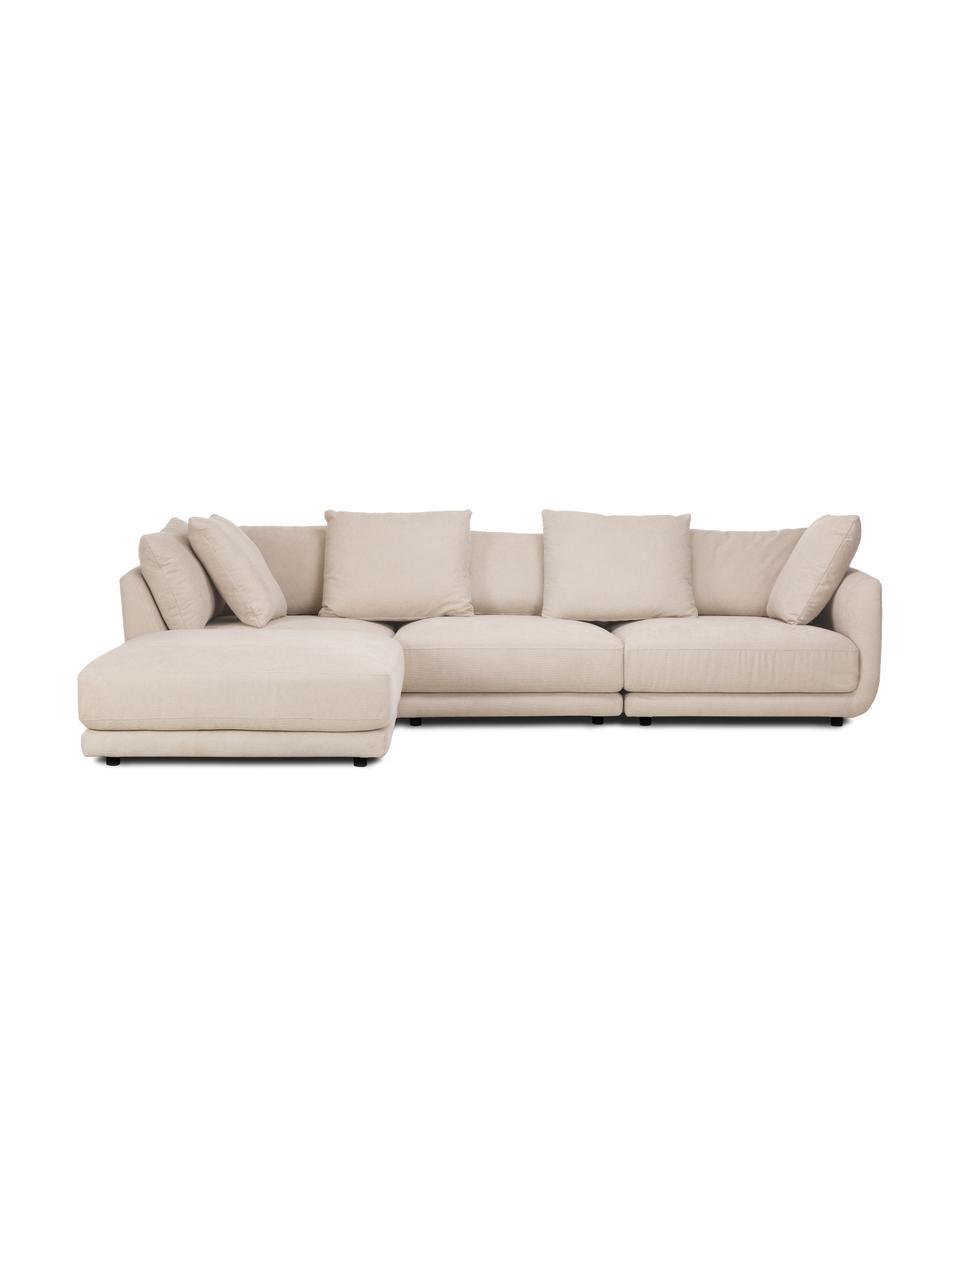 Modulares Sofa Jasmin (3-Sitzer) mit Hocker in Beige, Bezug: 85% Polyester, 15% Nylon , Gestell: Massives Fichtenholz FSC-, Webstoff Beige, B 300 x H 84 cm